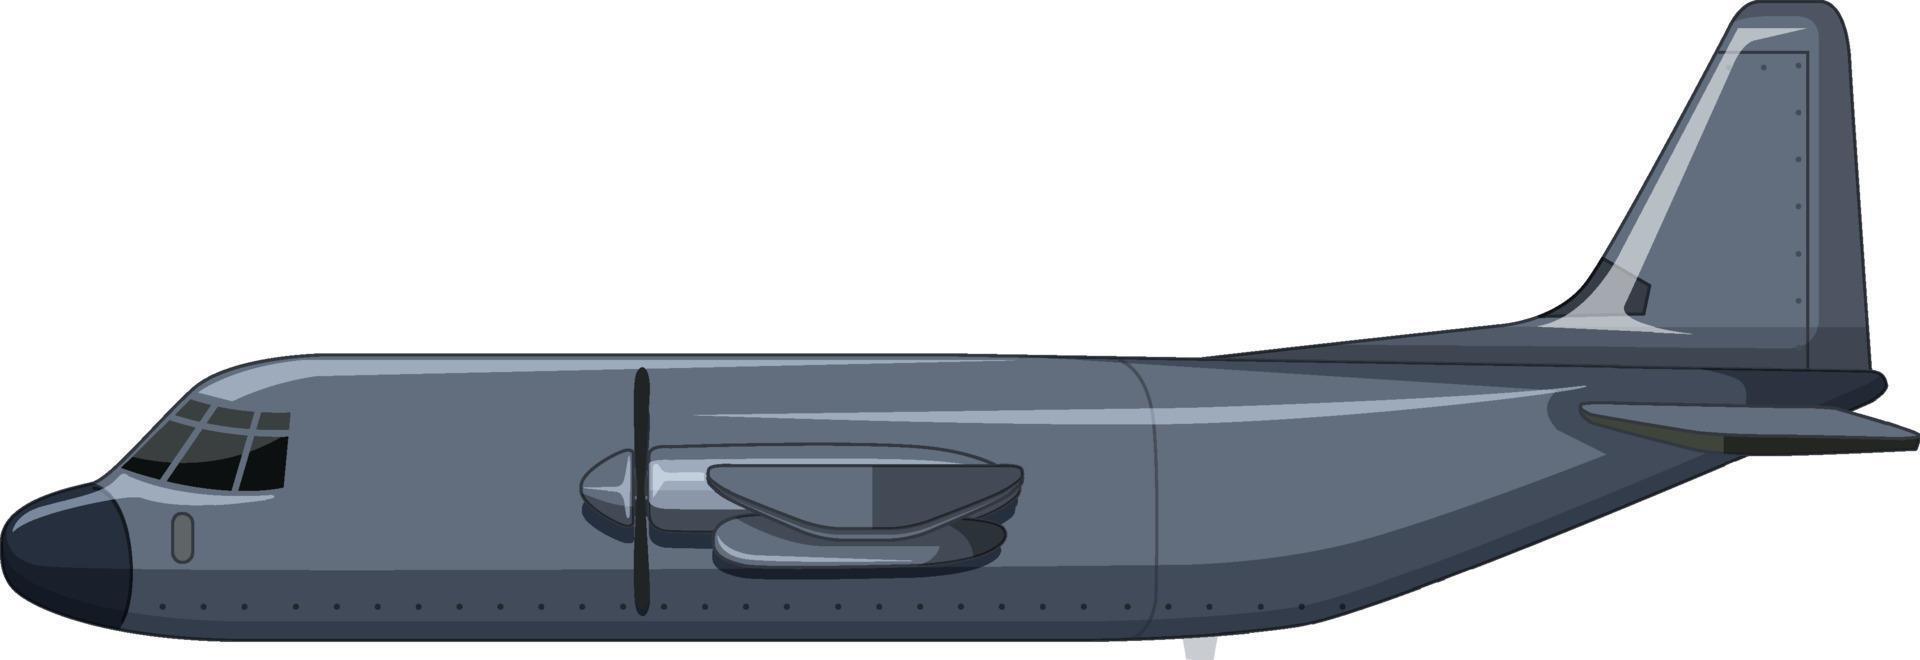 ett militärflygplan på vit bakgrund vektor